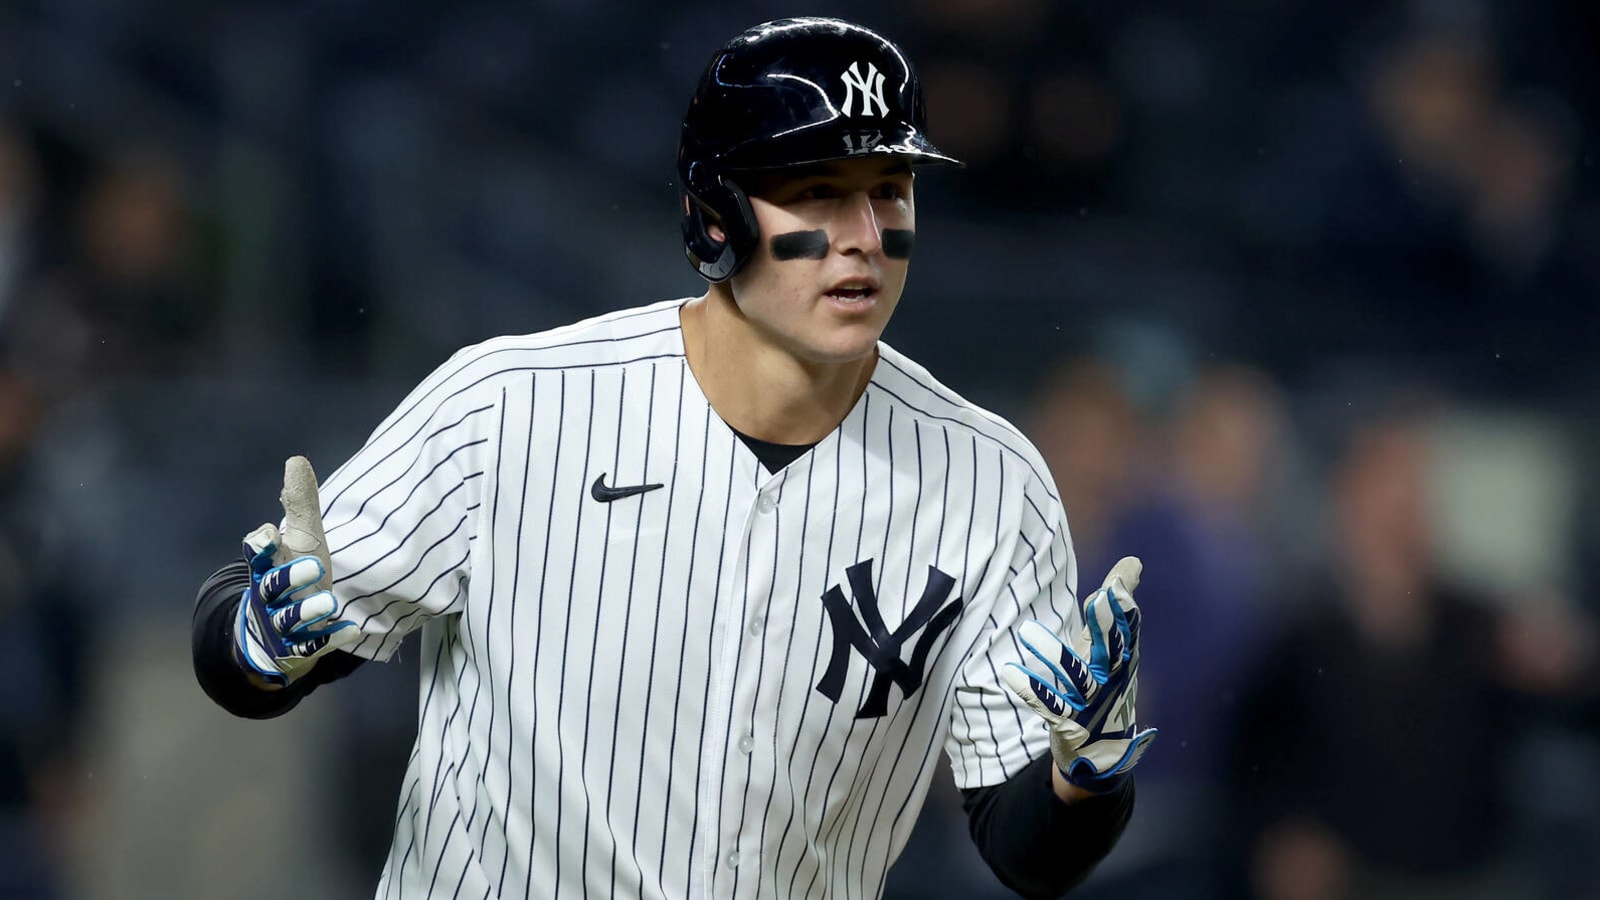 Anthony Rizzo hit the cheapest Yankee Stadium home run imaginable